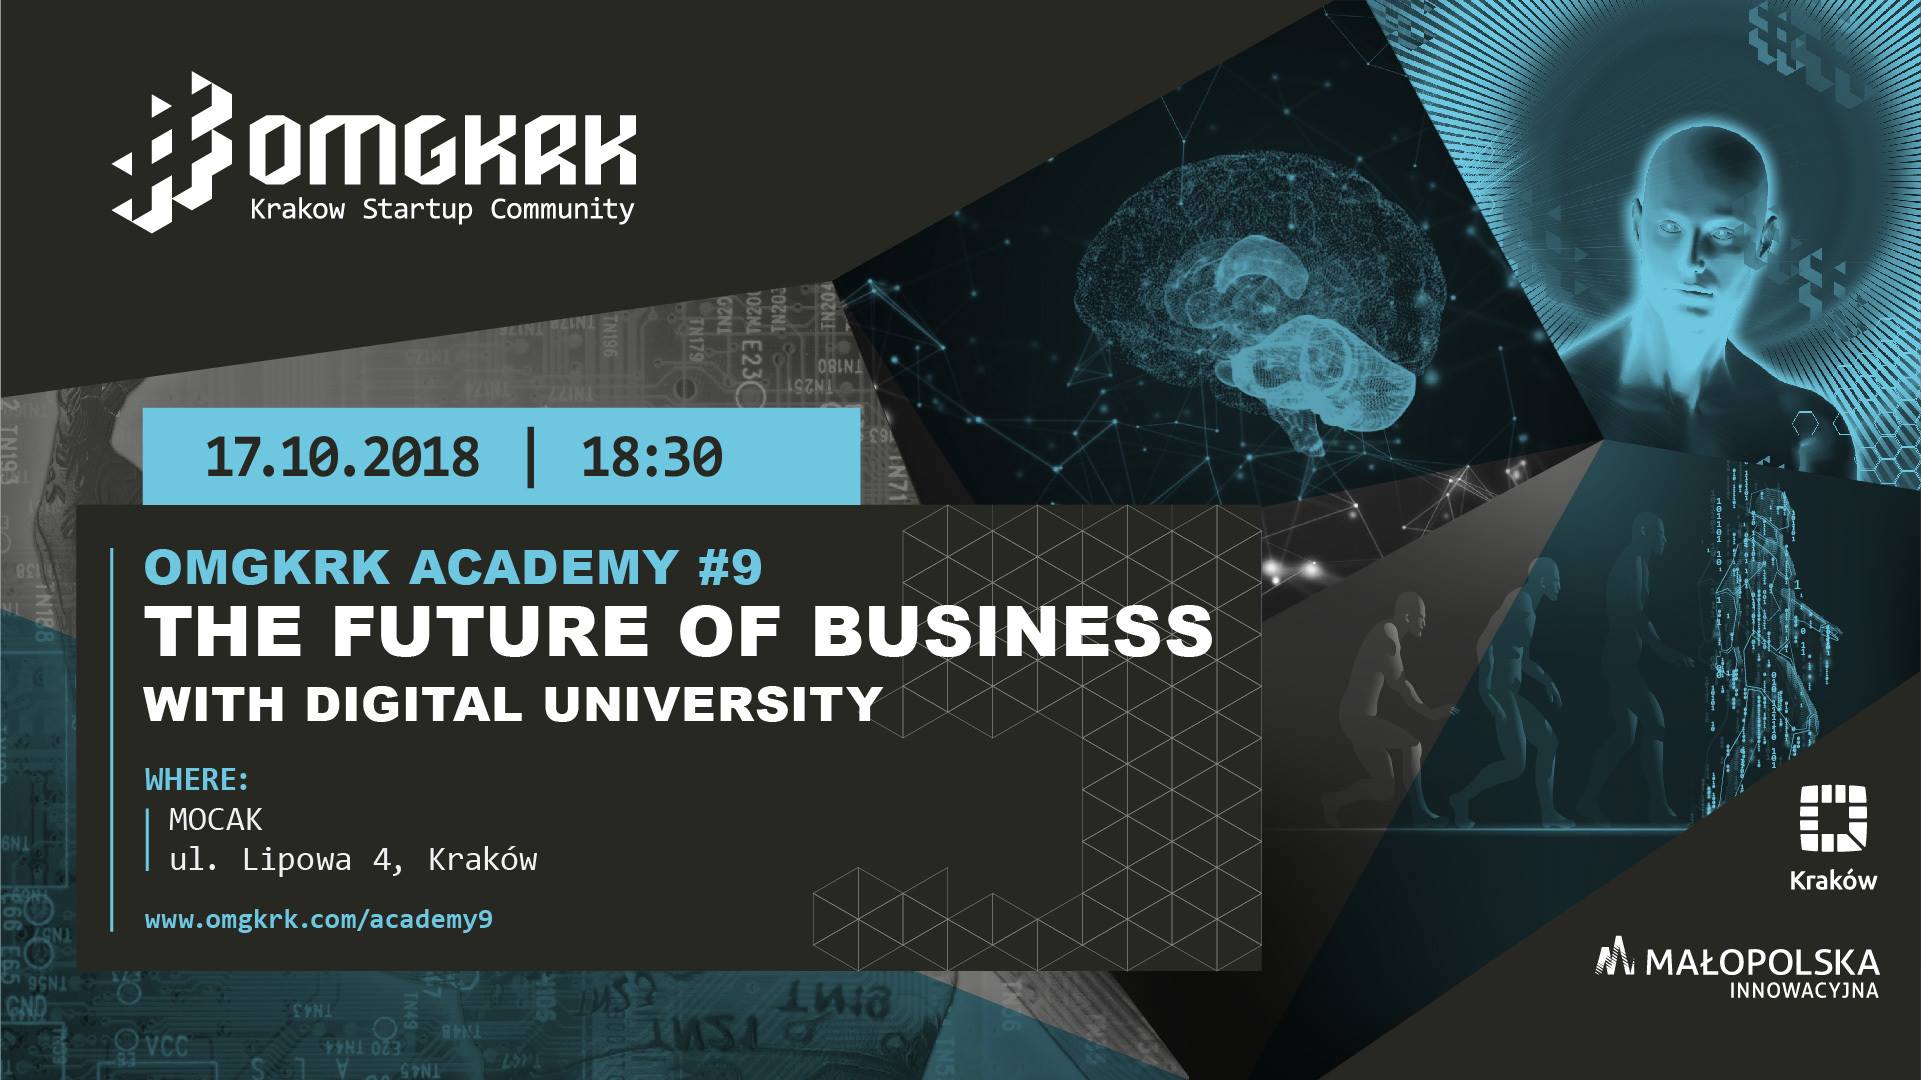 omgkrk-academy-9-the-future-of-business-start-krk-up-pazdziernik-2018